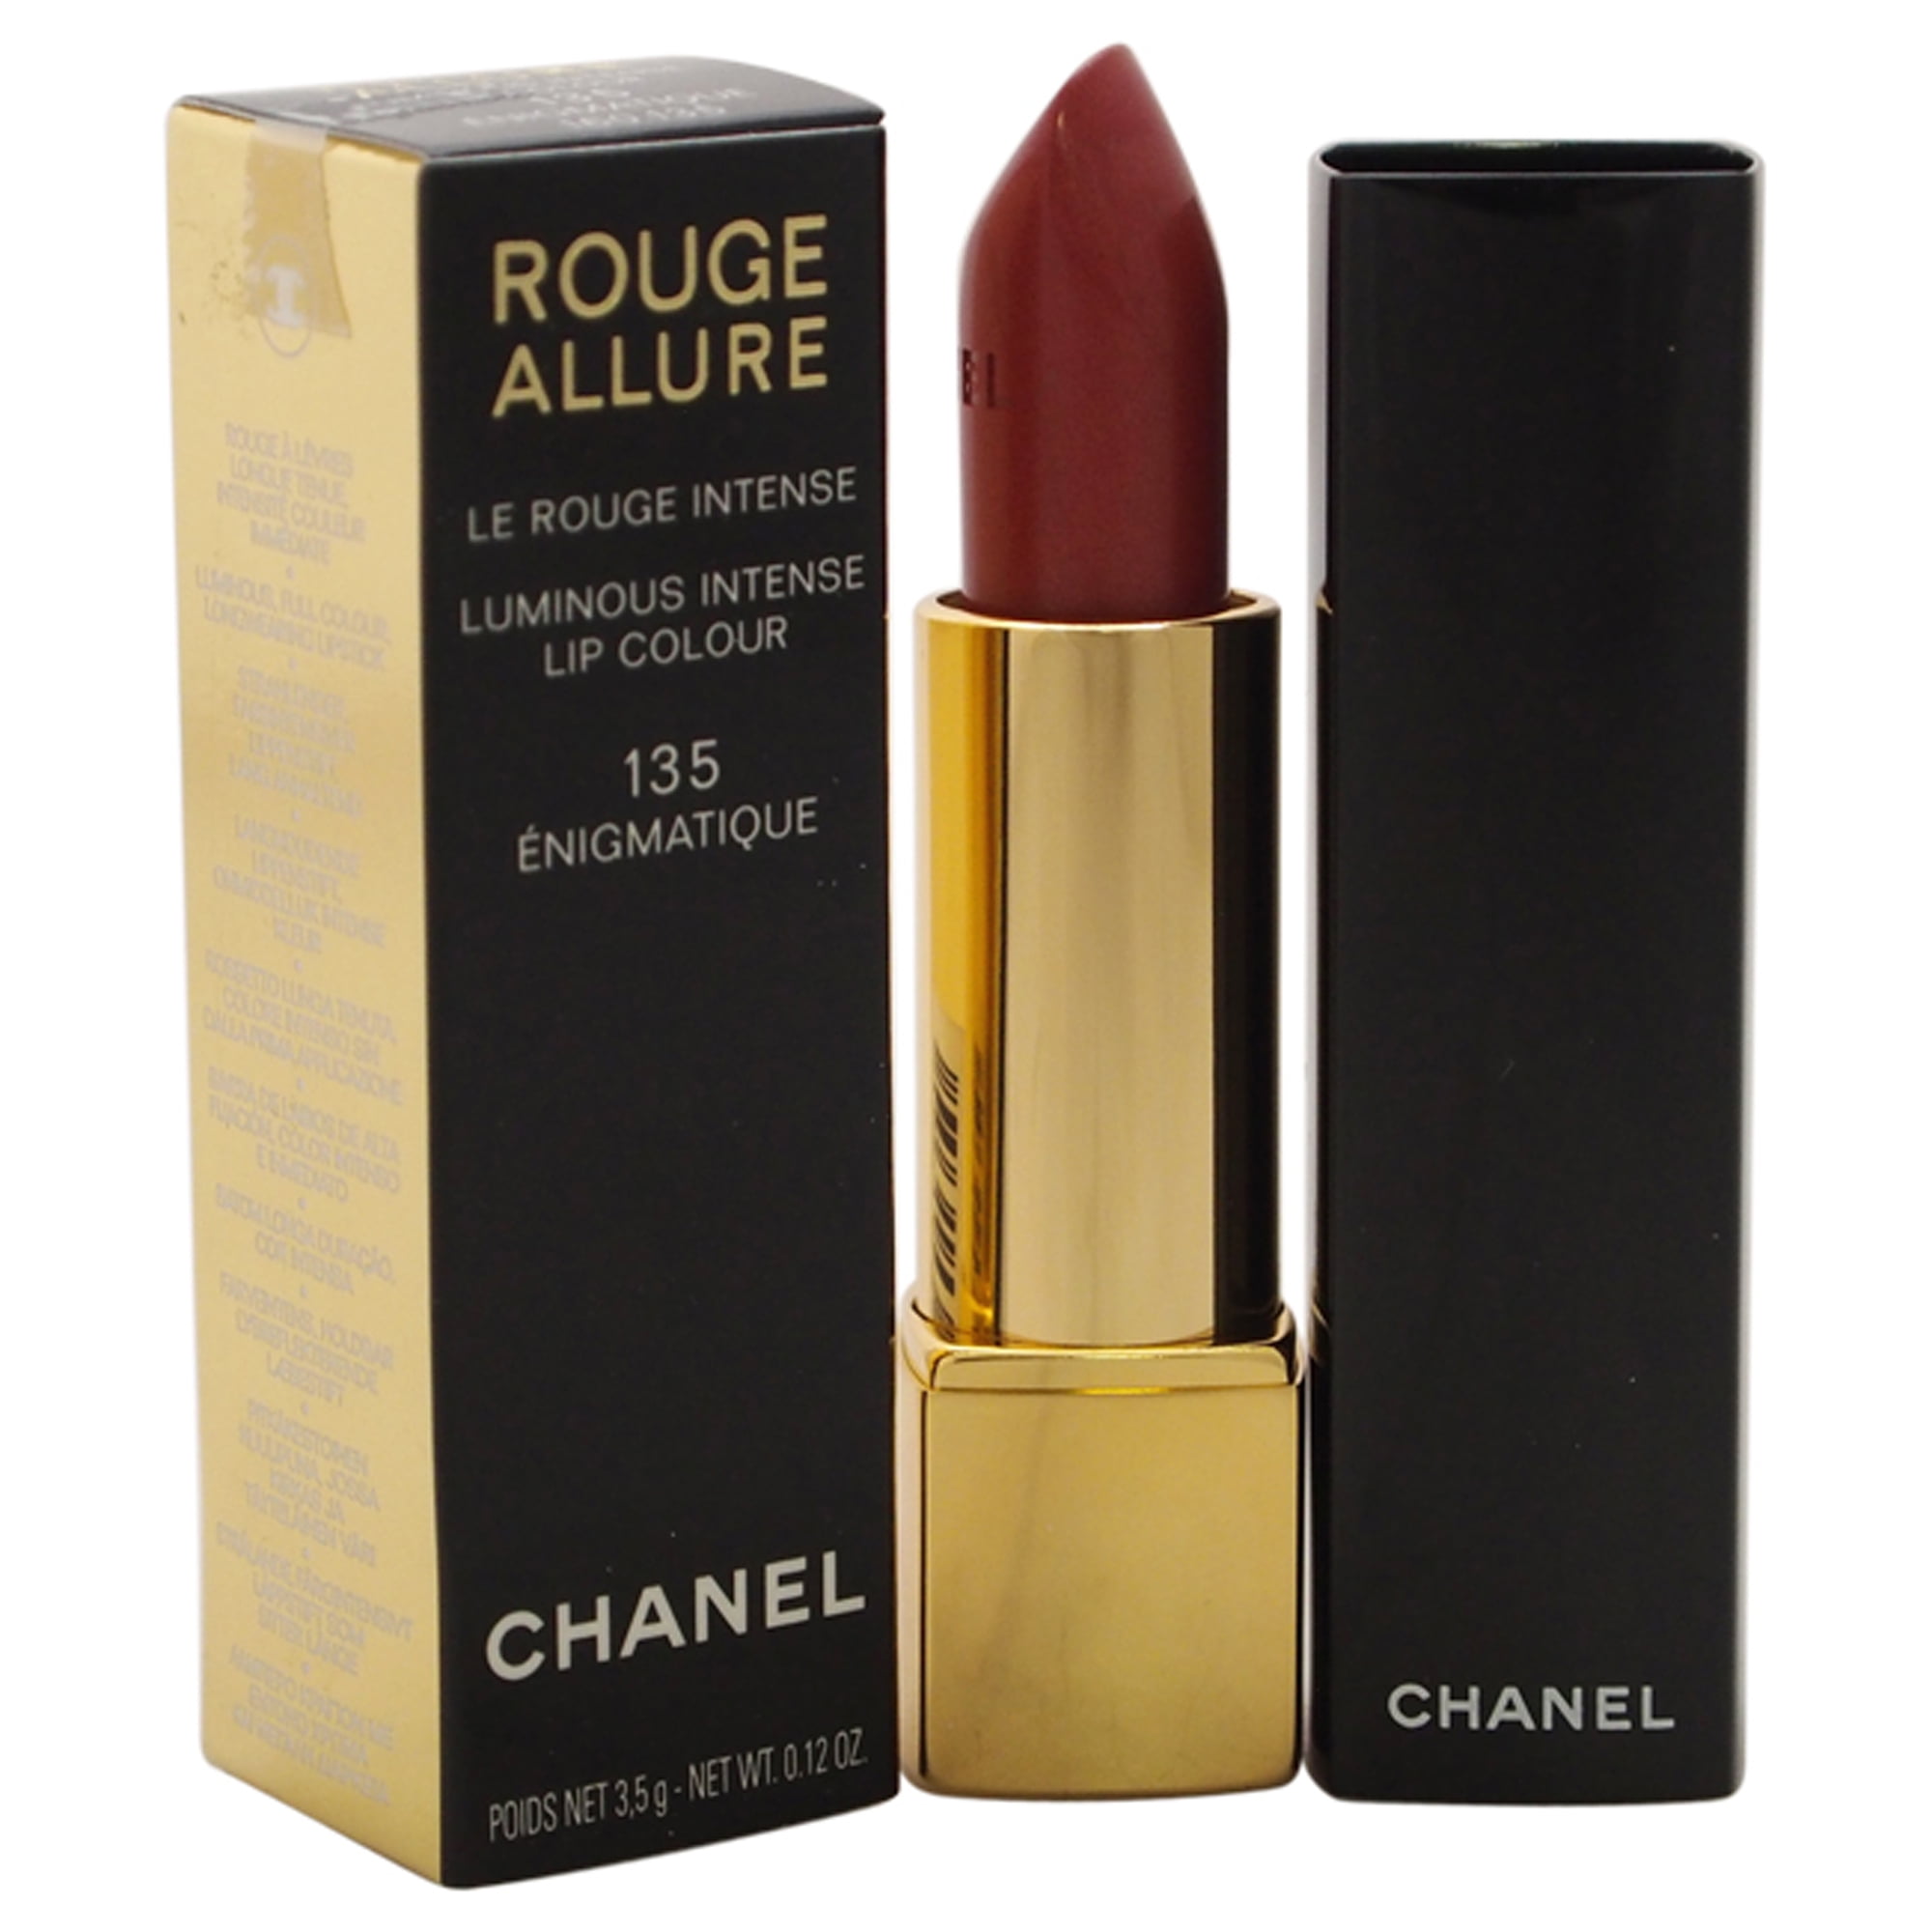 Rouge Allure Luminous Intense Lip Colour - # 135 Enigmatique by Chanel for  Women - 0.12 oz Lipstick